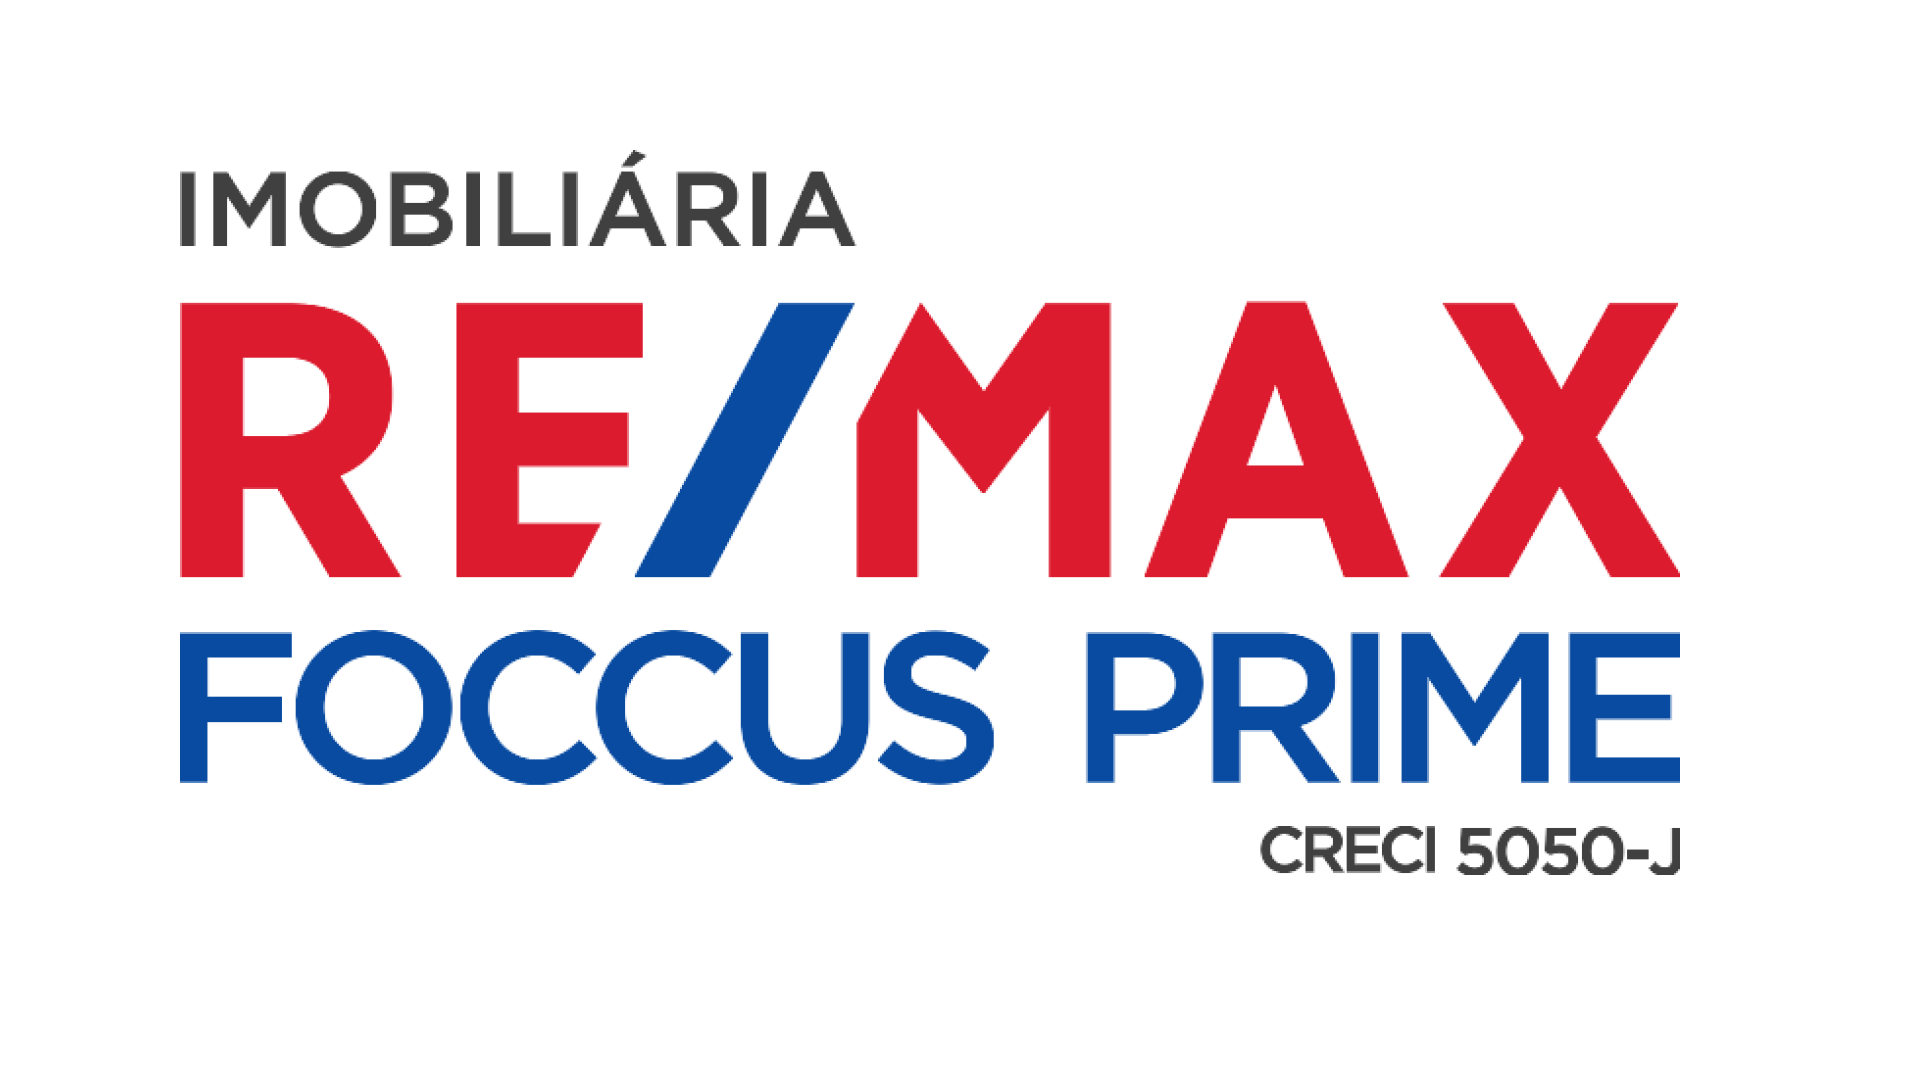 REMAX Foccus Prime